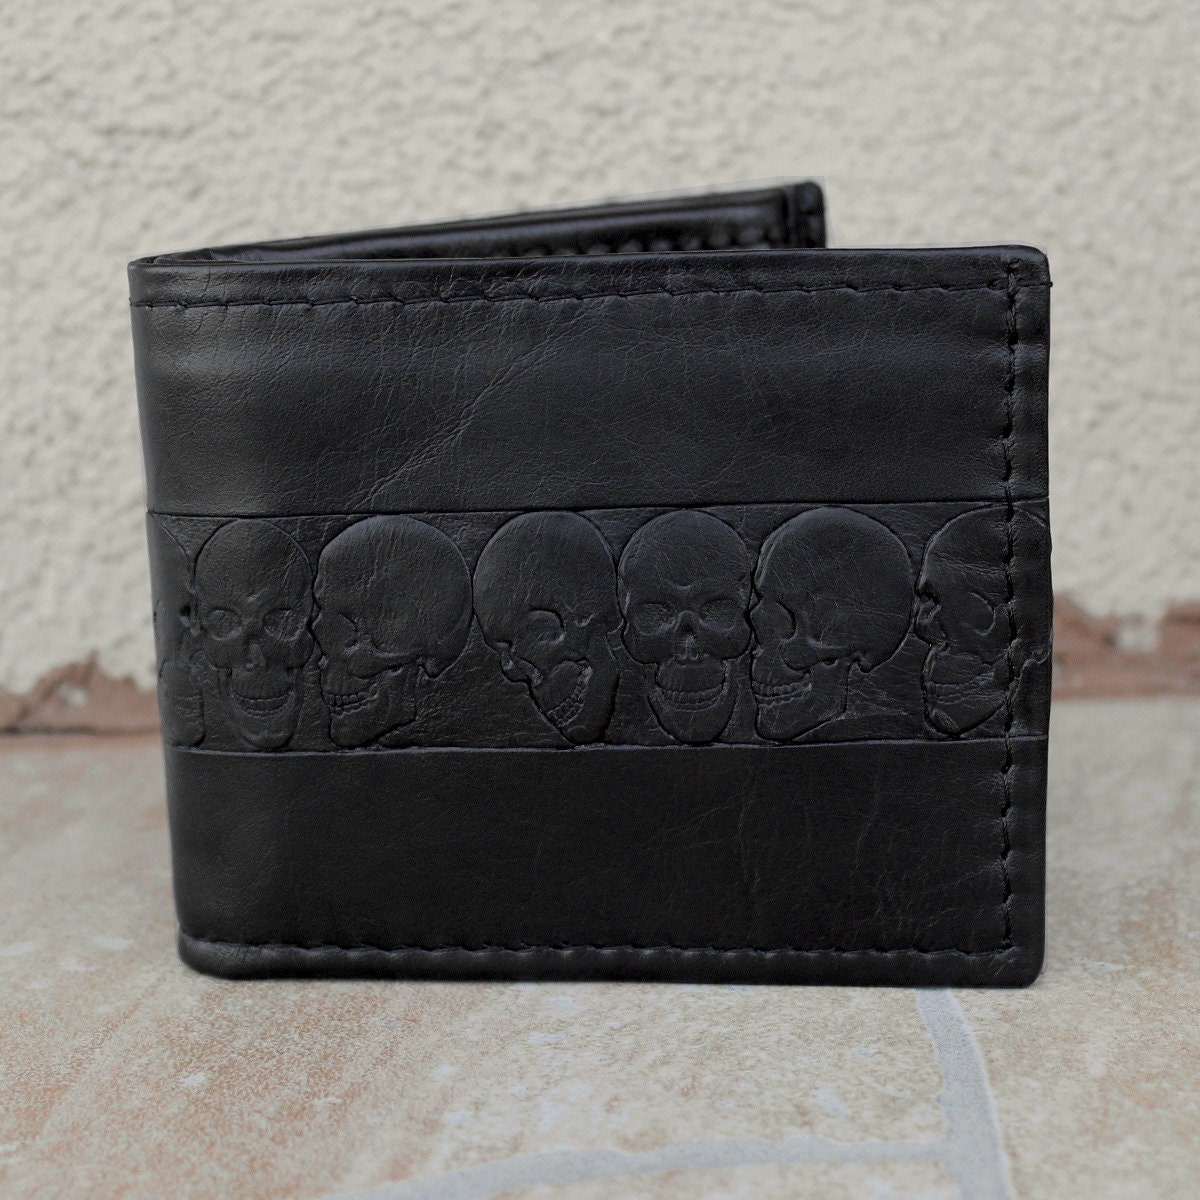 Shagwear Mens Wallet Various Colors and Designs: Abstract Skull Black 